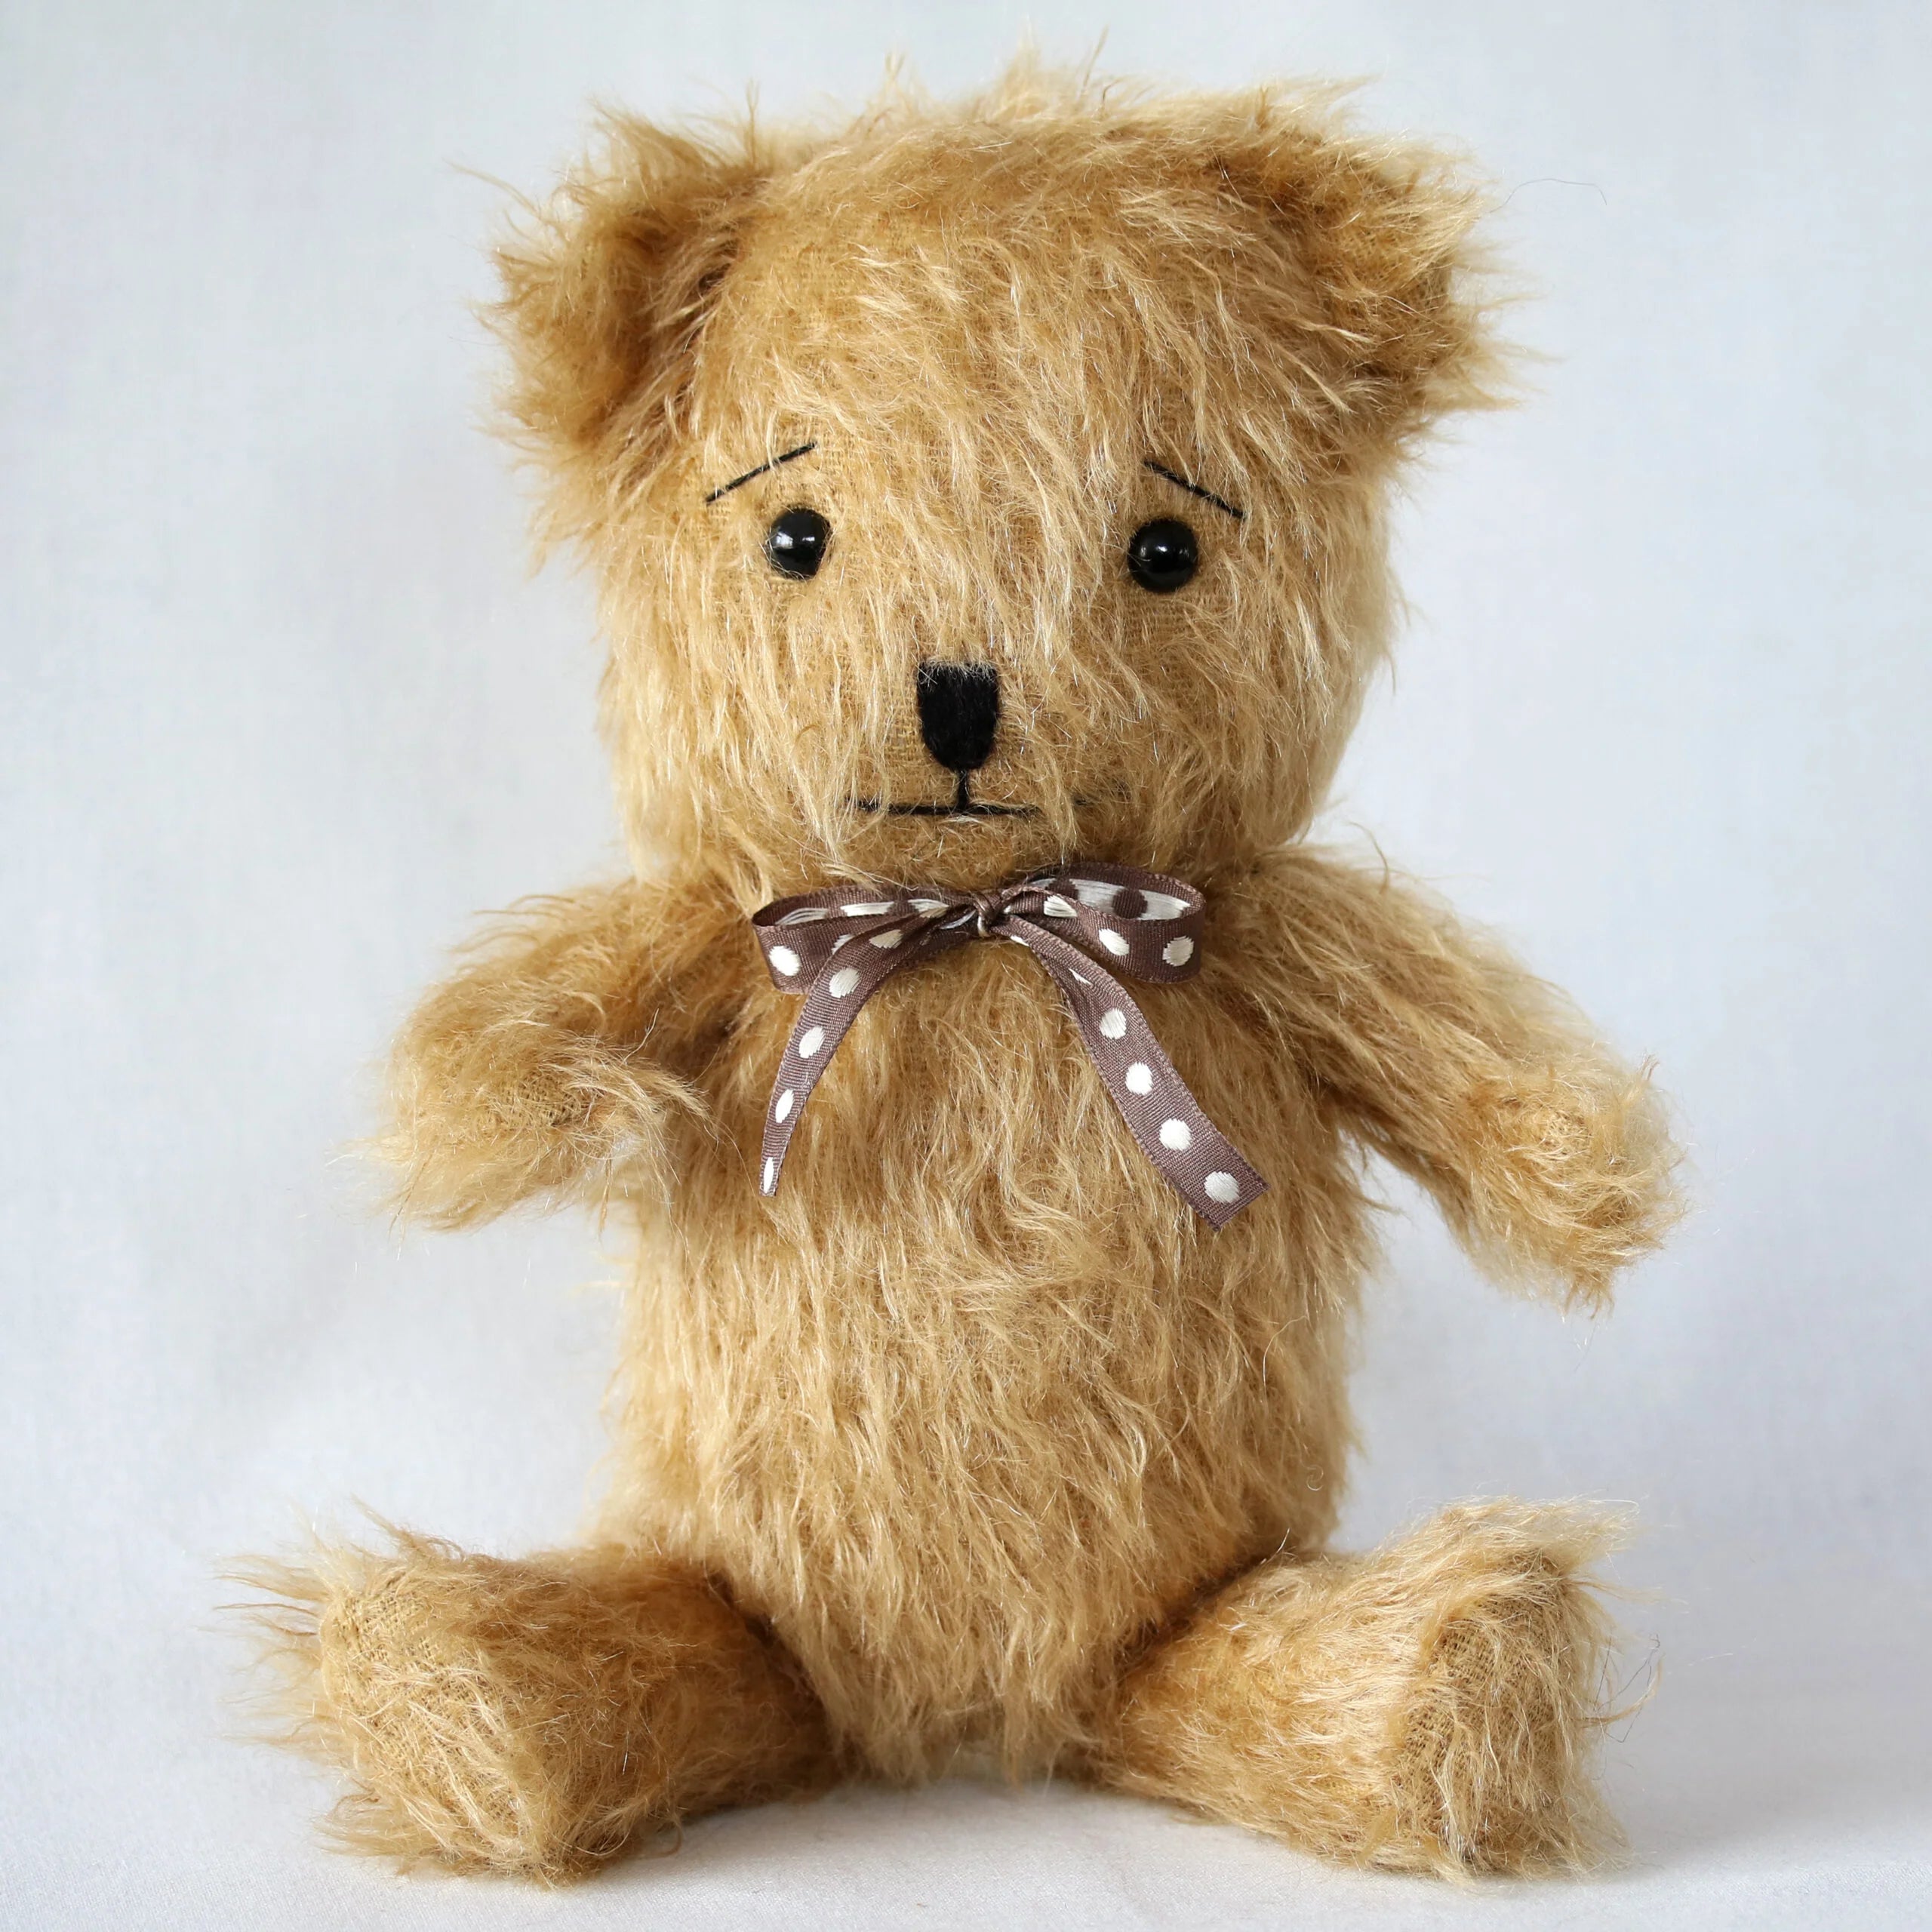 Miu-Miu The Handmade Bear from Canterbury Bears.